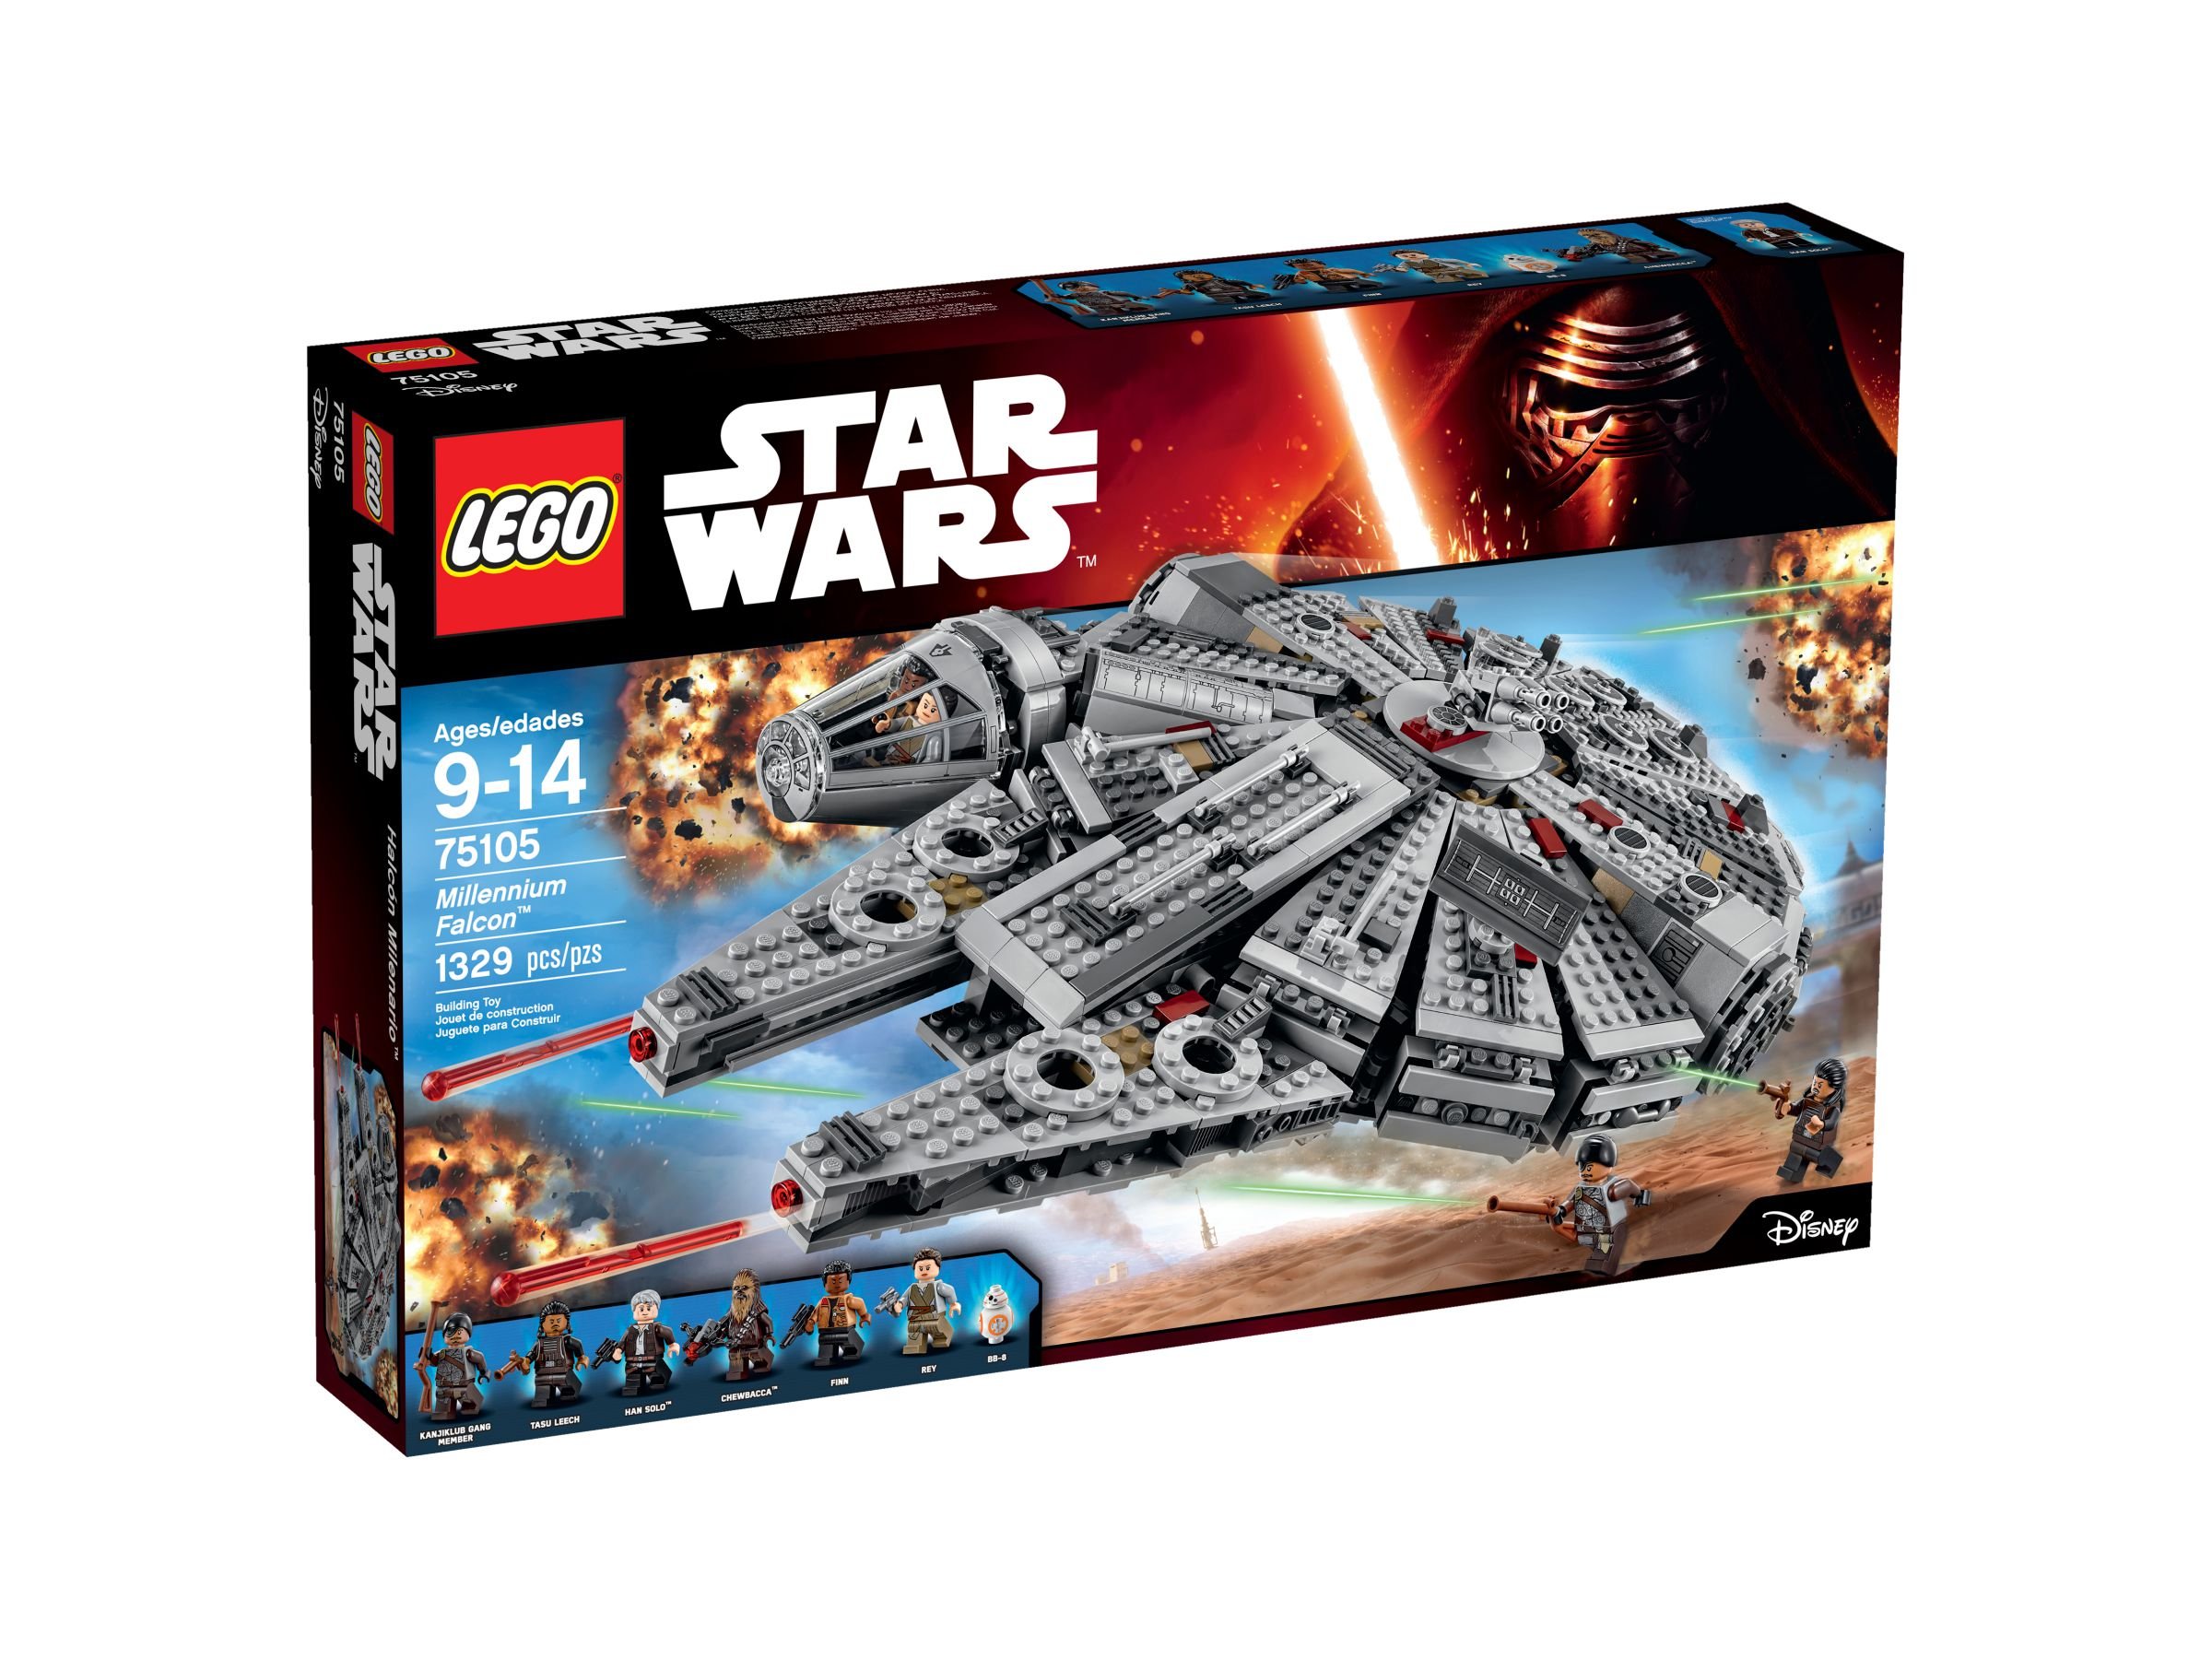 LEGO Star Wars 75105 Millennium Falcon™ LEGO_75105_alt1.jpg